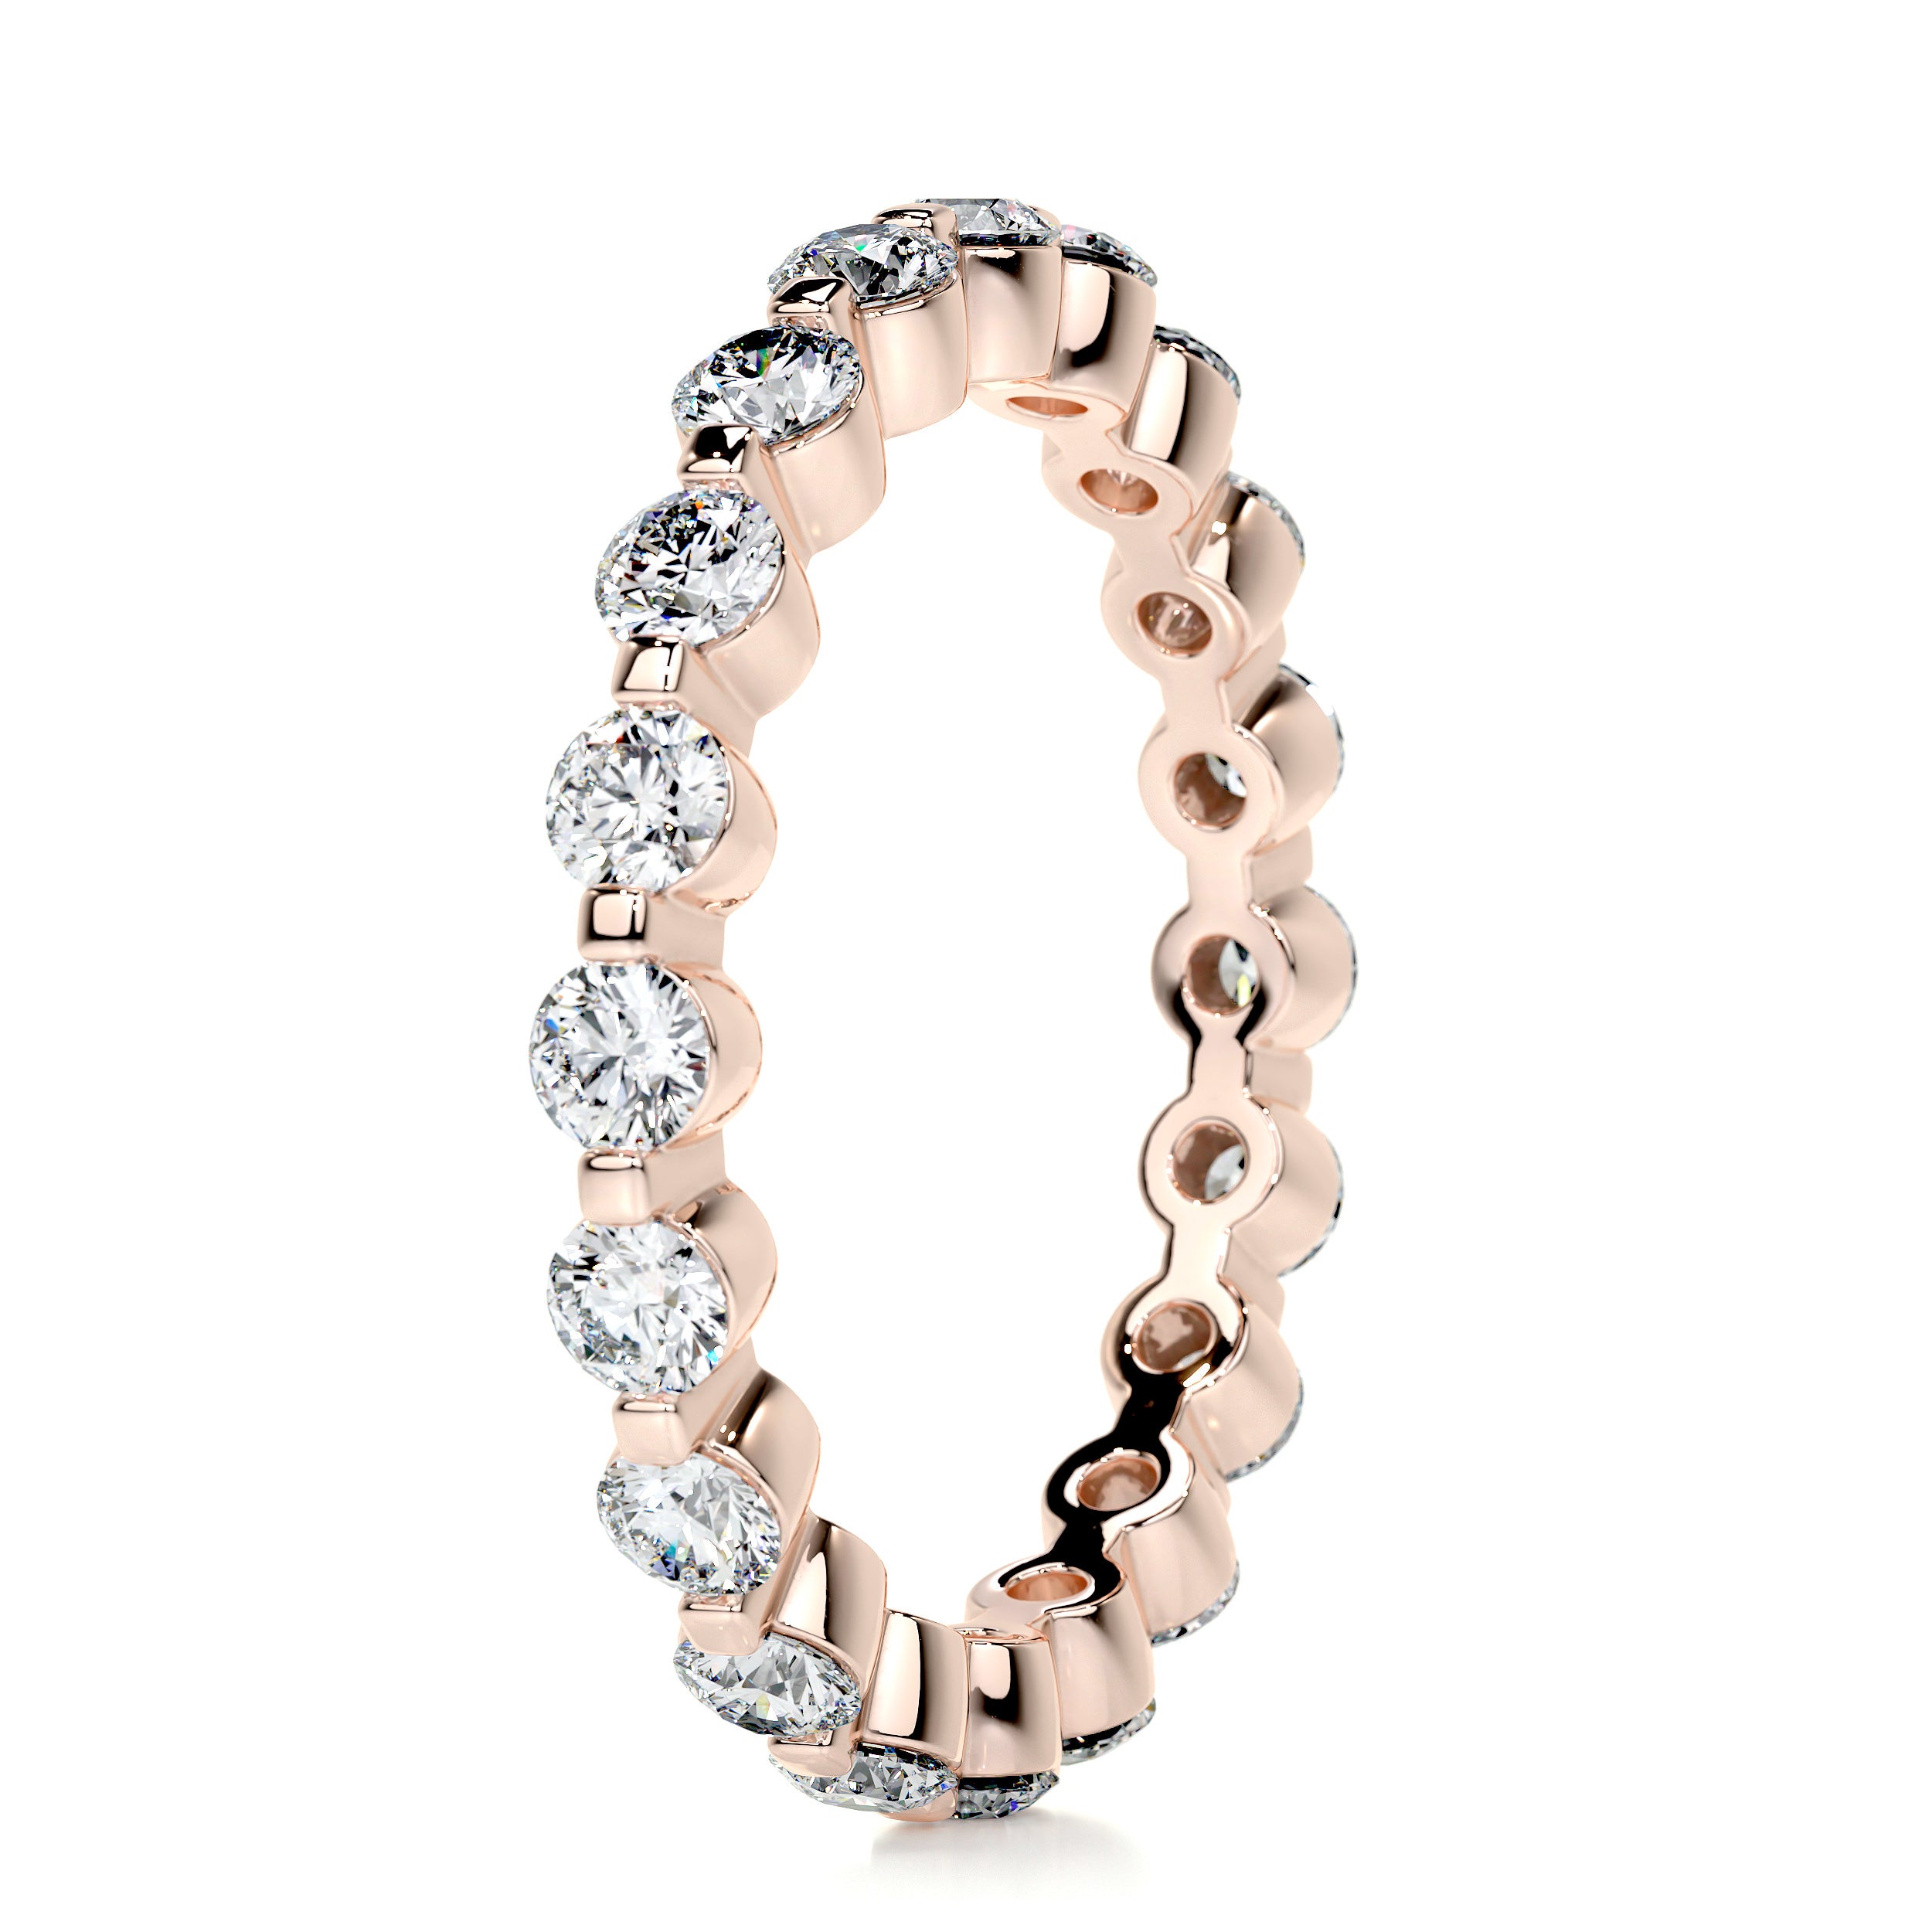 Josie Eternity Wedding Ring   (1.75 Carat) -14K Rose Gold